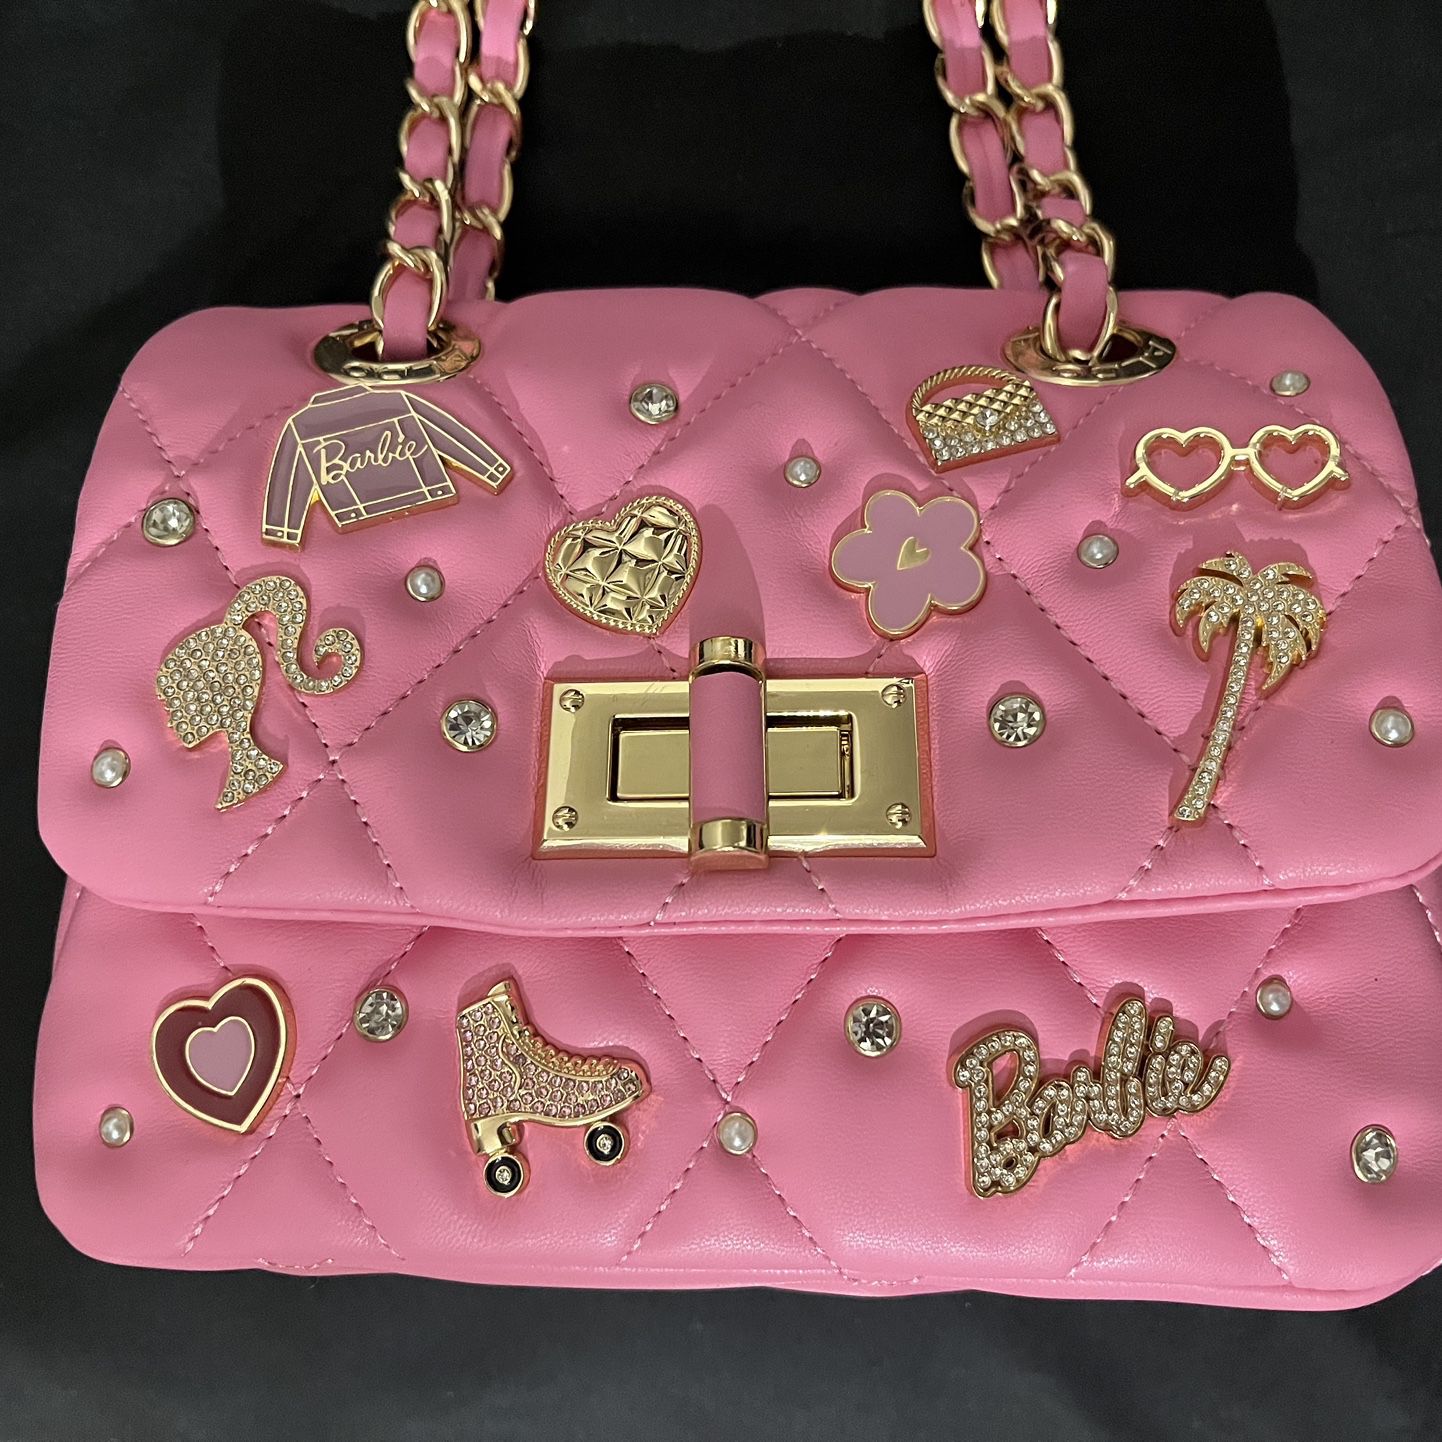 Aldo Barbie™ x Aldo Crossbody Bag - Free Shipping